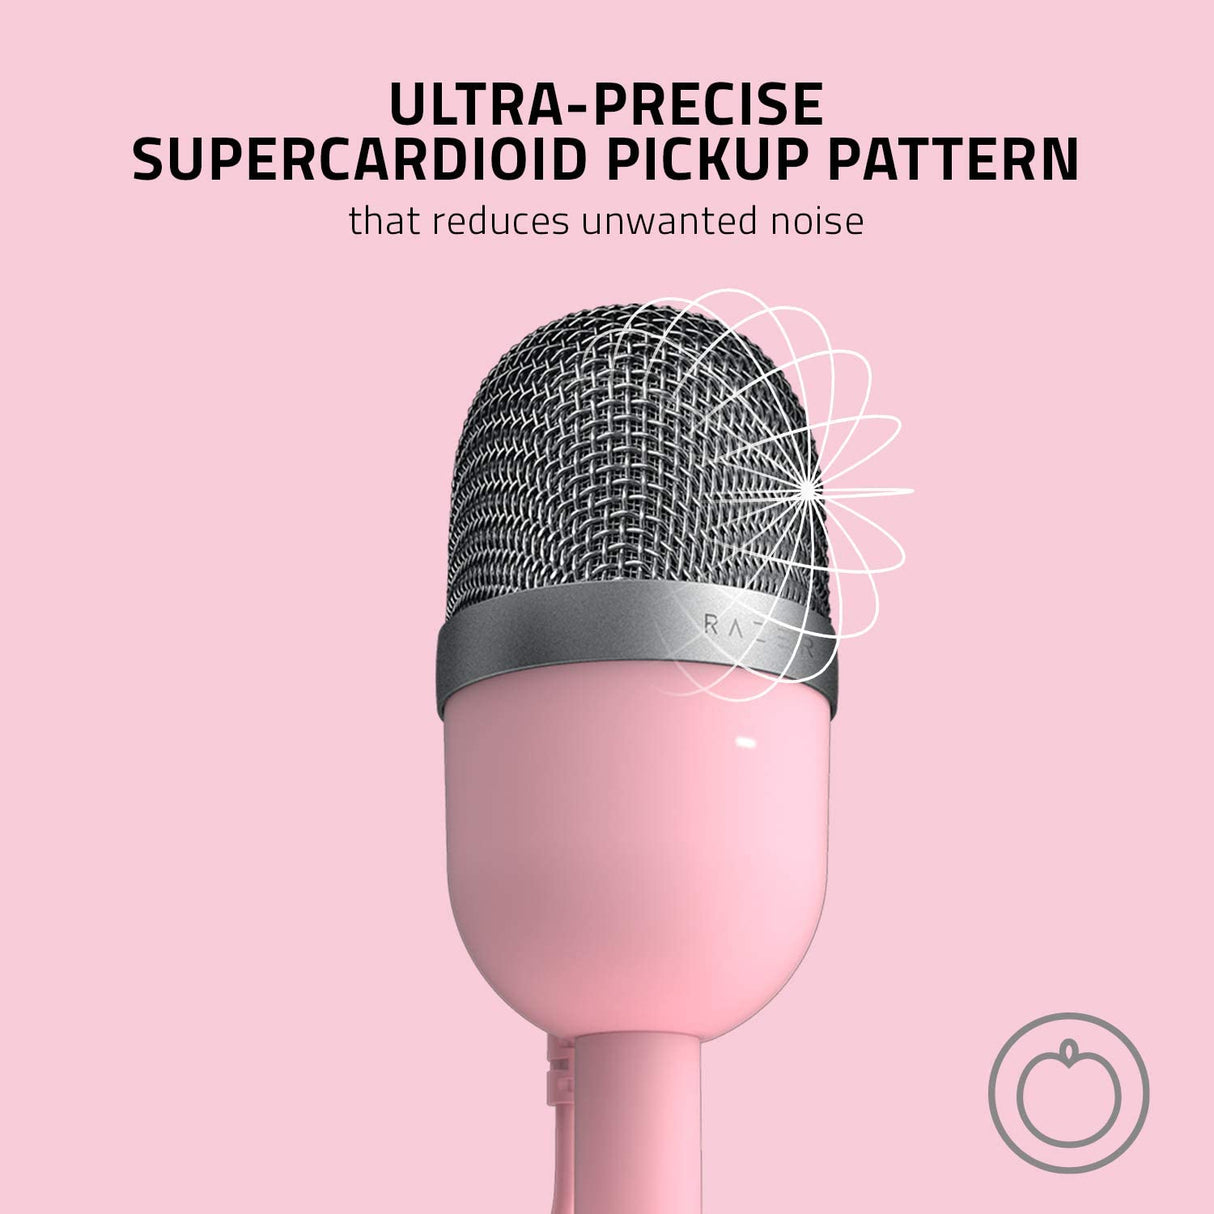 Razer Seiren Mini Ultra Compact Microphone - PINK - Level UpRazerAccessories811659039873